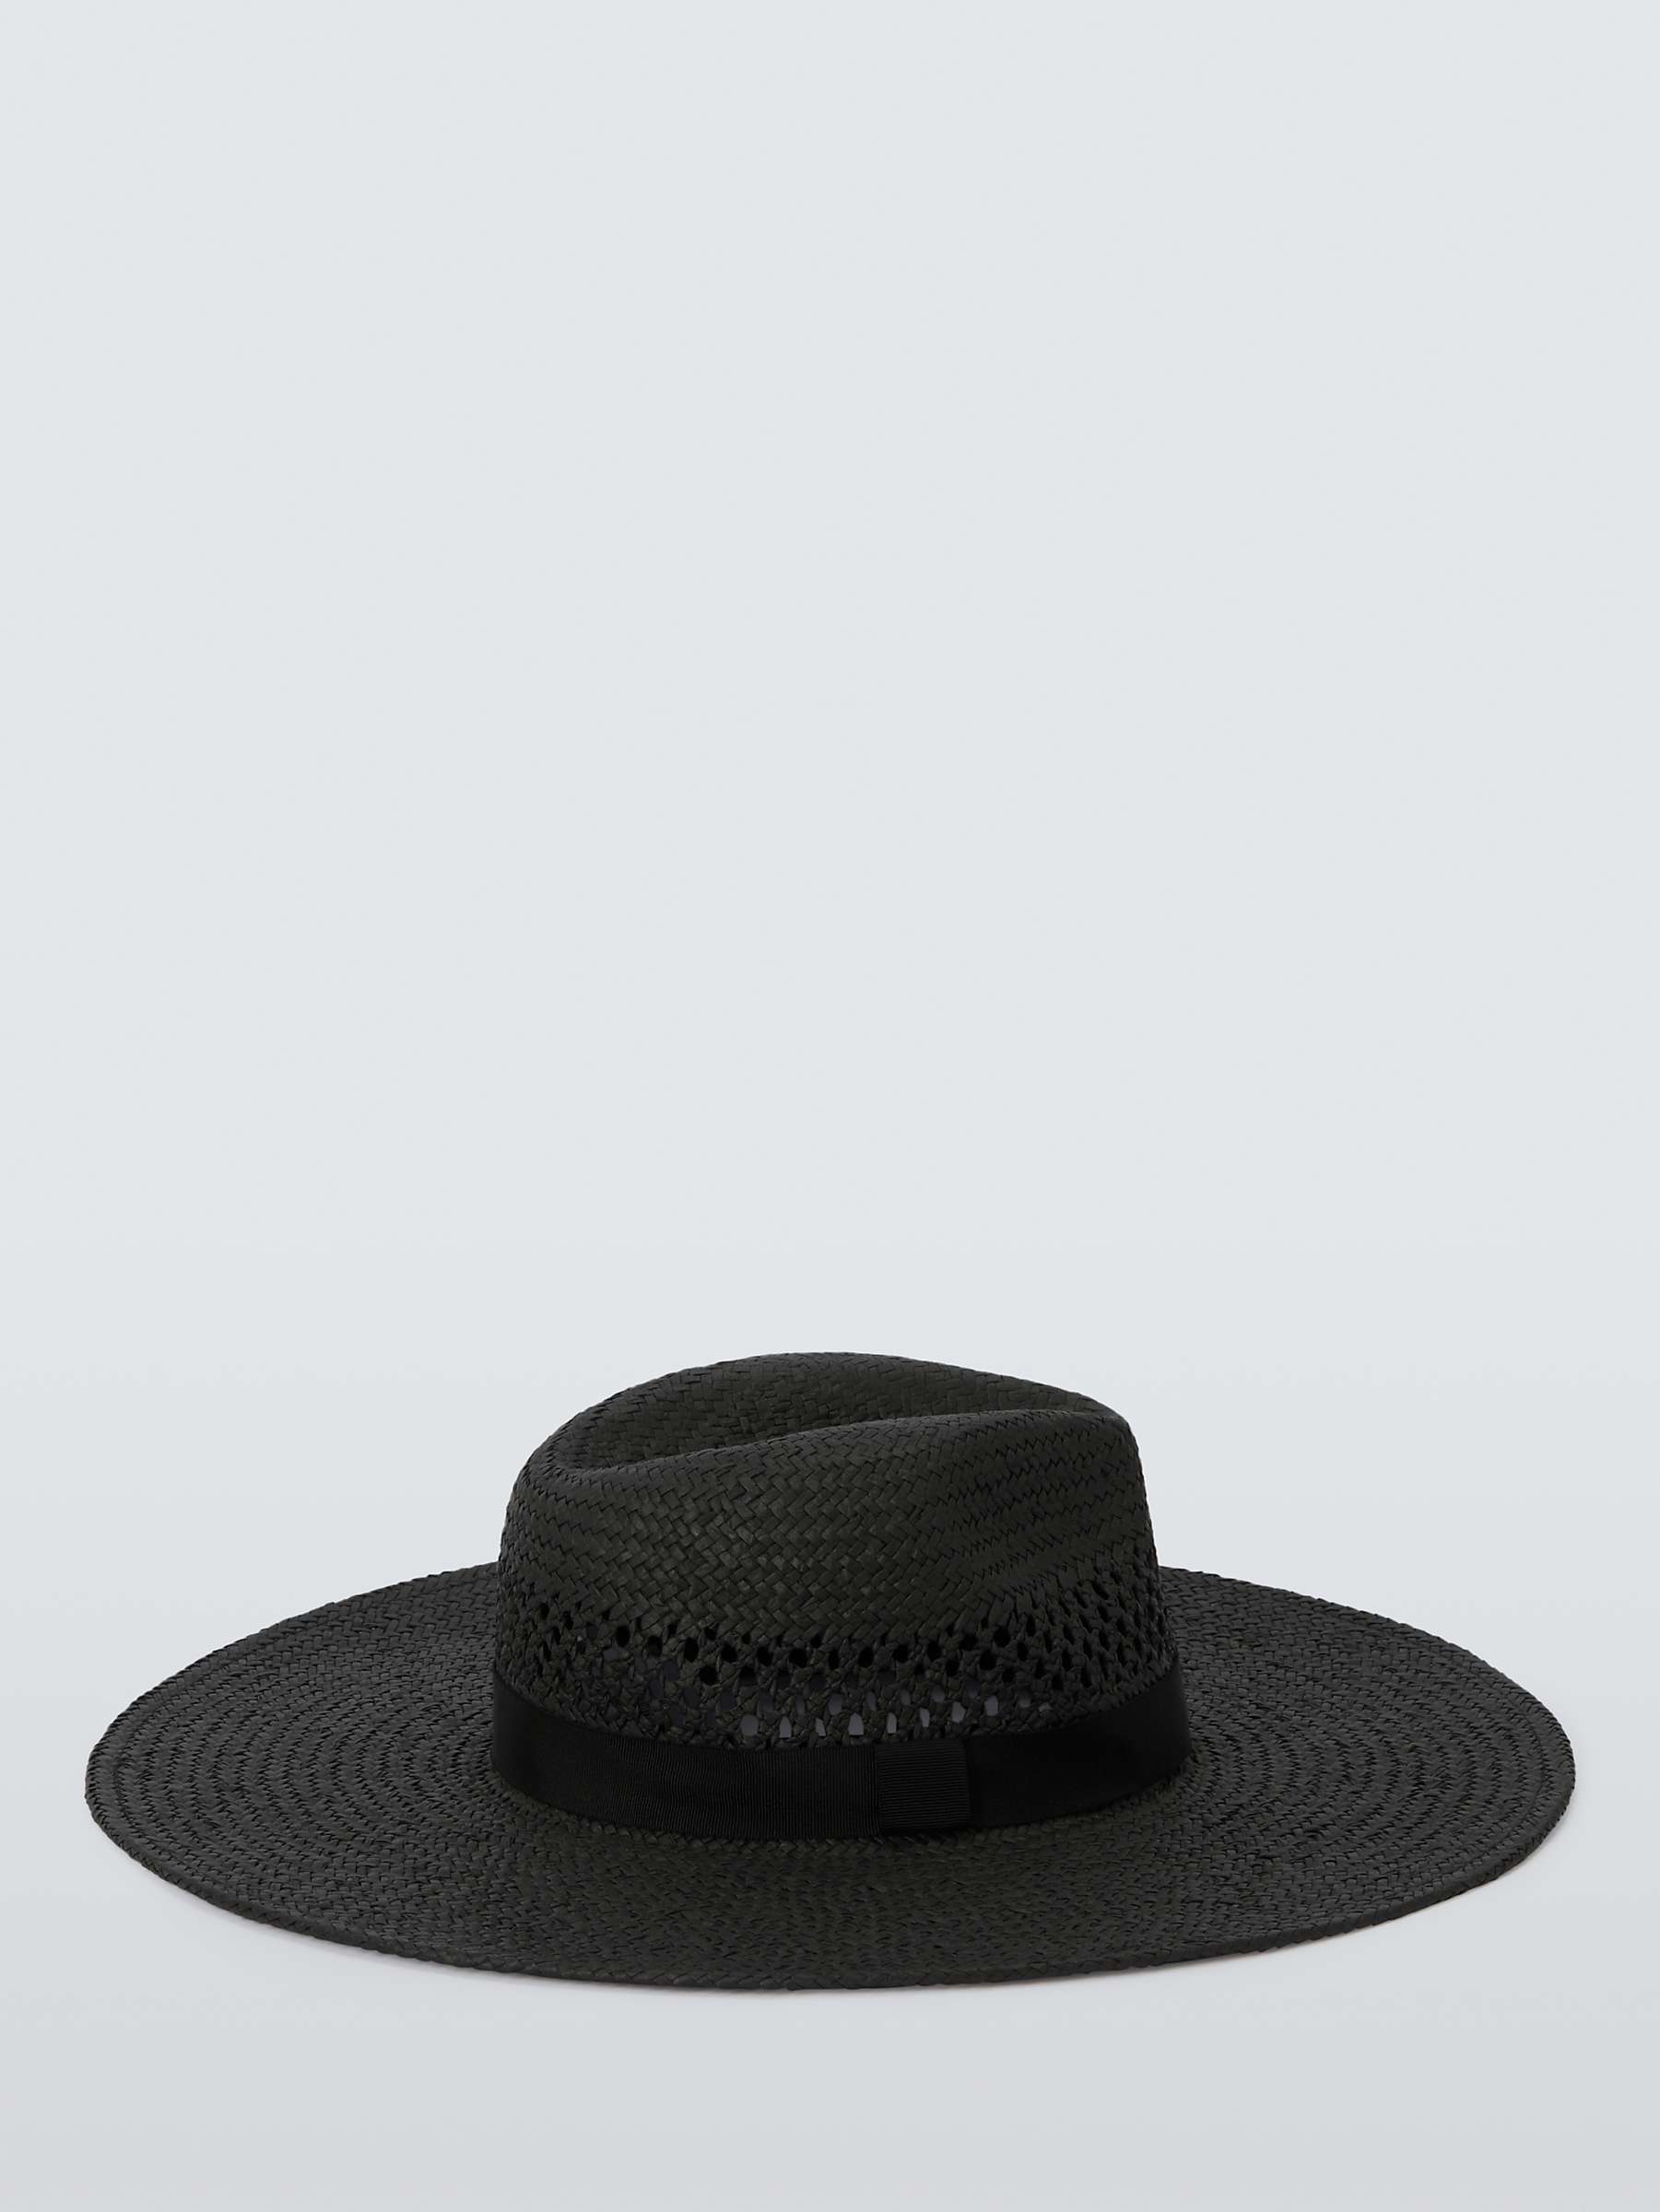 Buy John Lewis Wide Brim Fedora Hat, FSC-Certified, Black Online at johnlewis.com